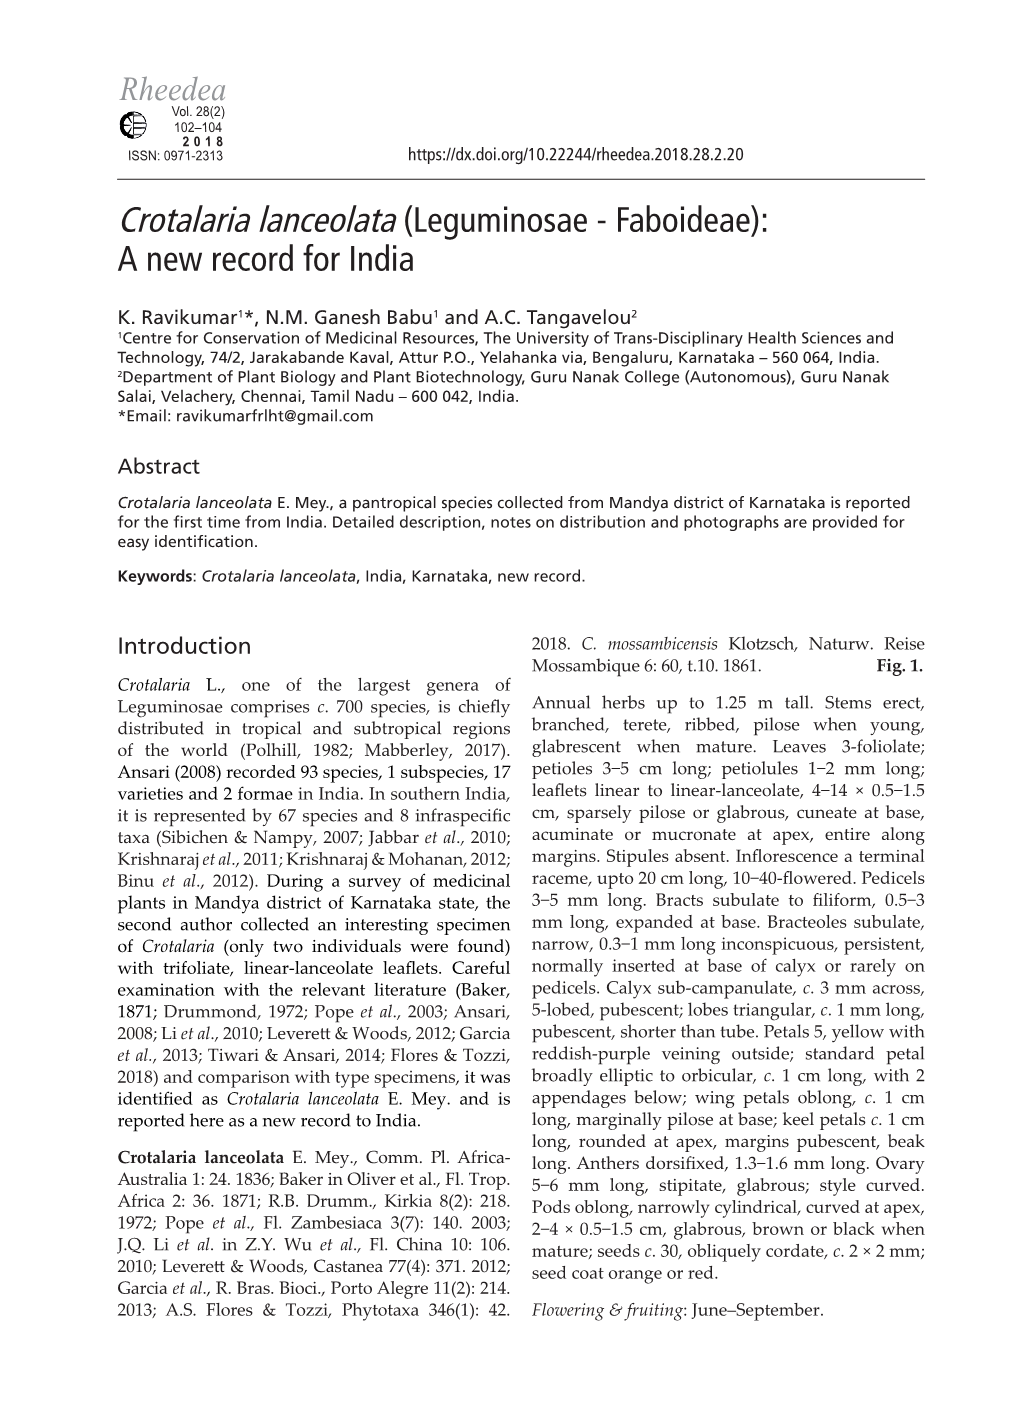 Crotalaria Lanceolata (Leguminosae - Faboideae): a New Record for India